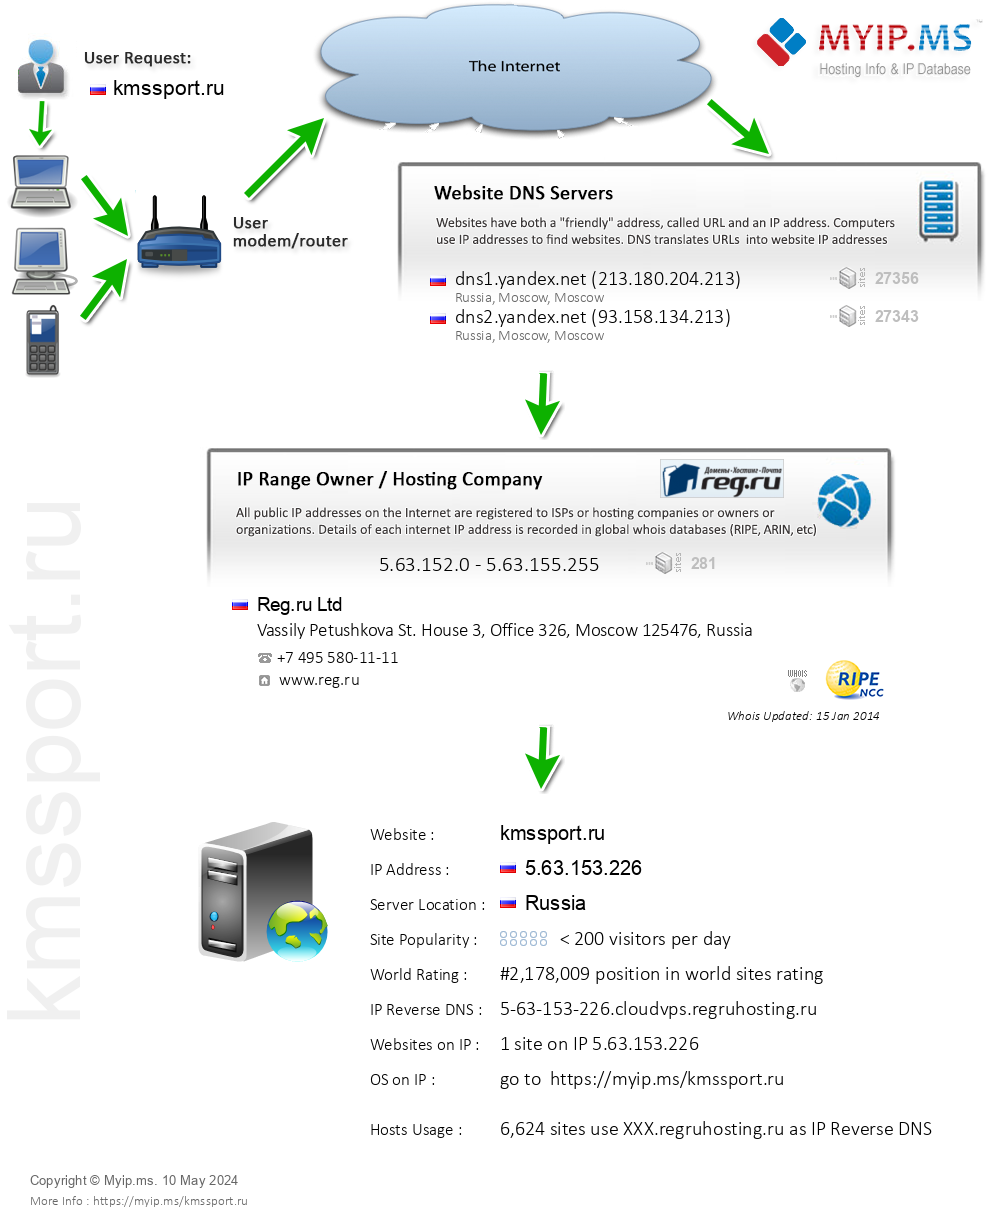 Kmssport.ru - Website Hosting Visual IP Diagram